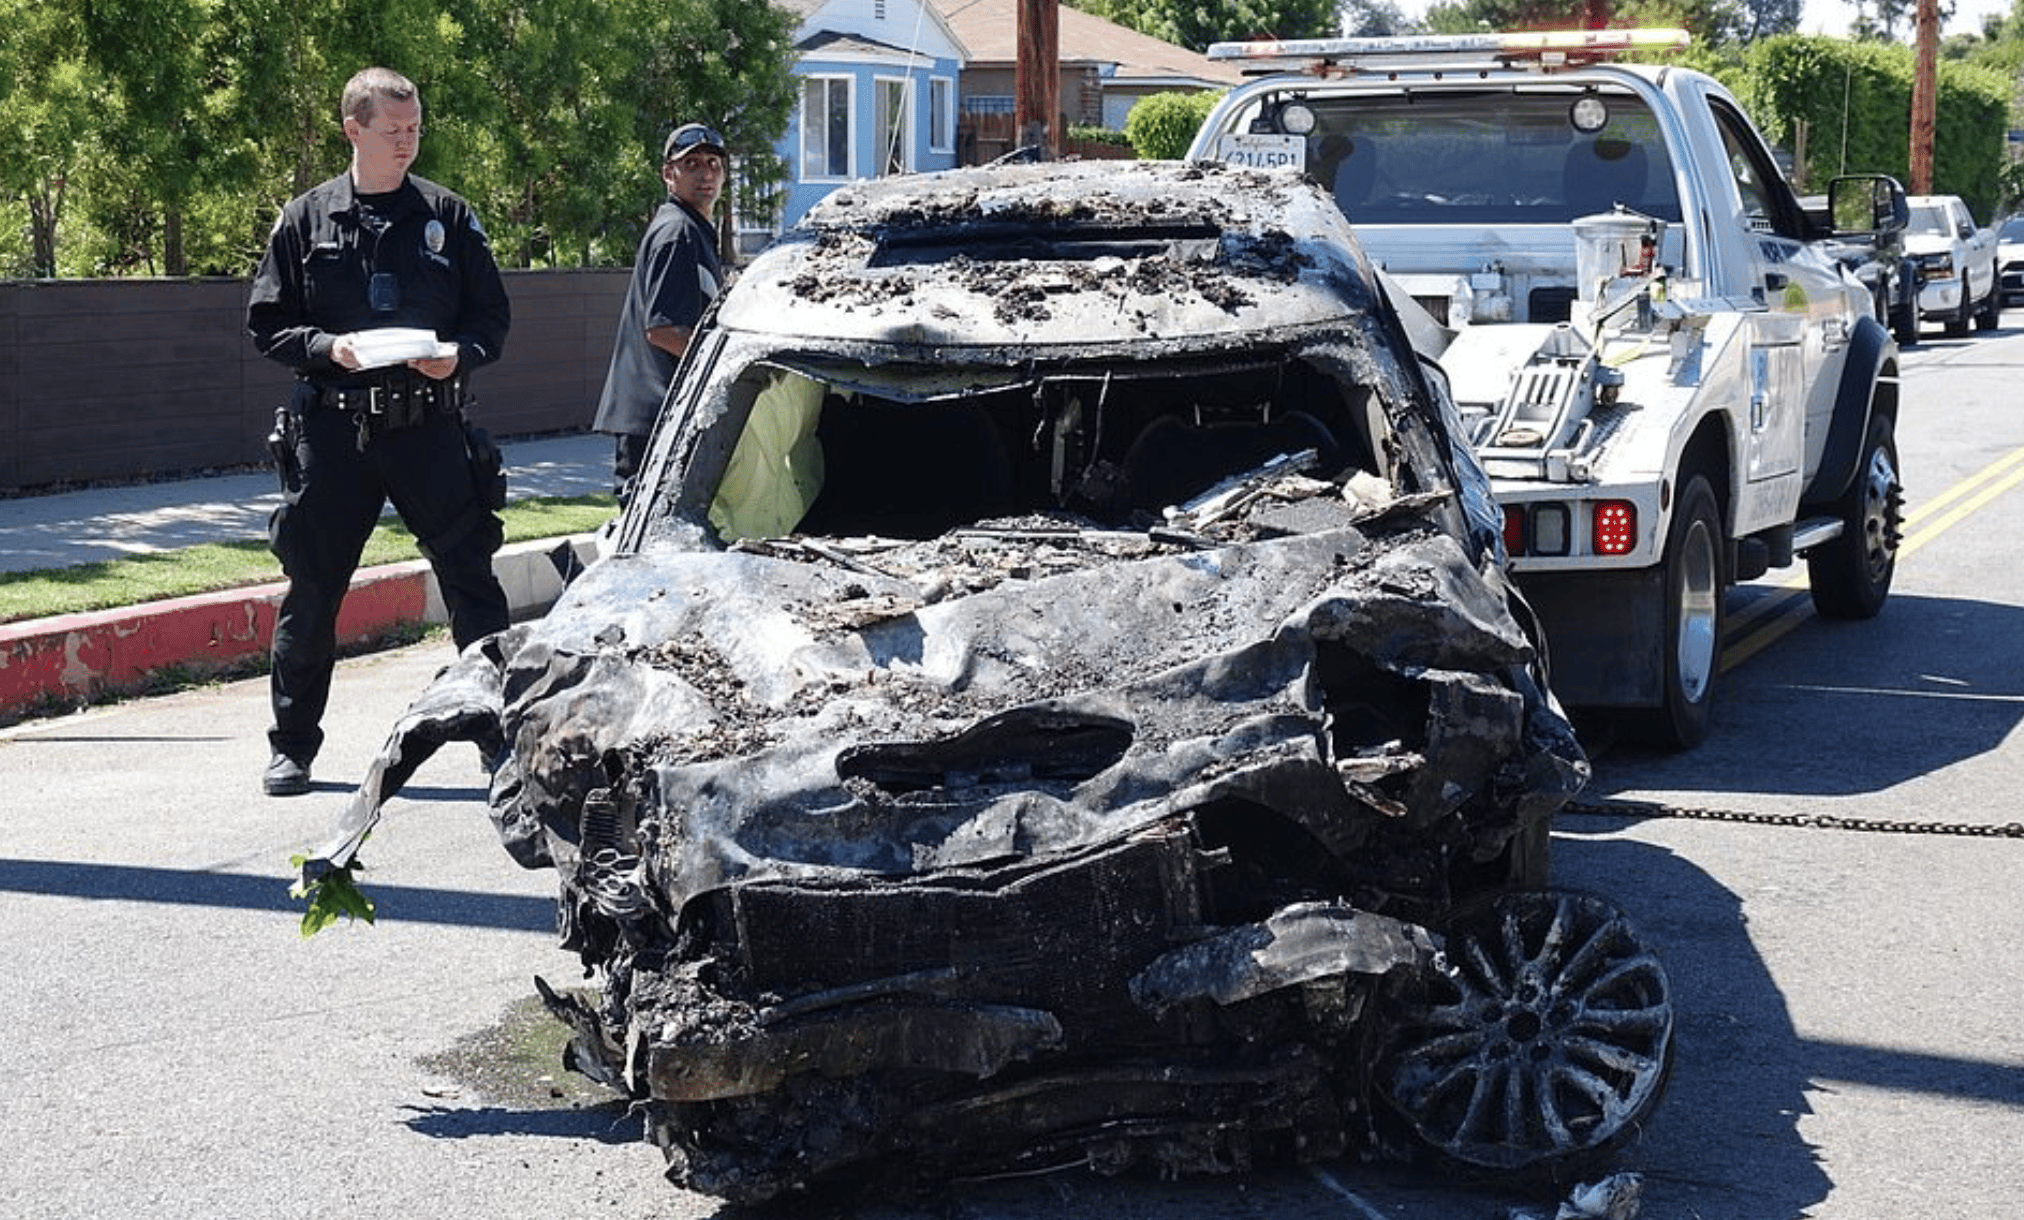 Ann Heche's car after crash